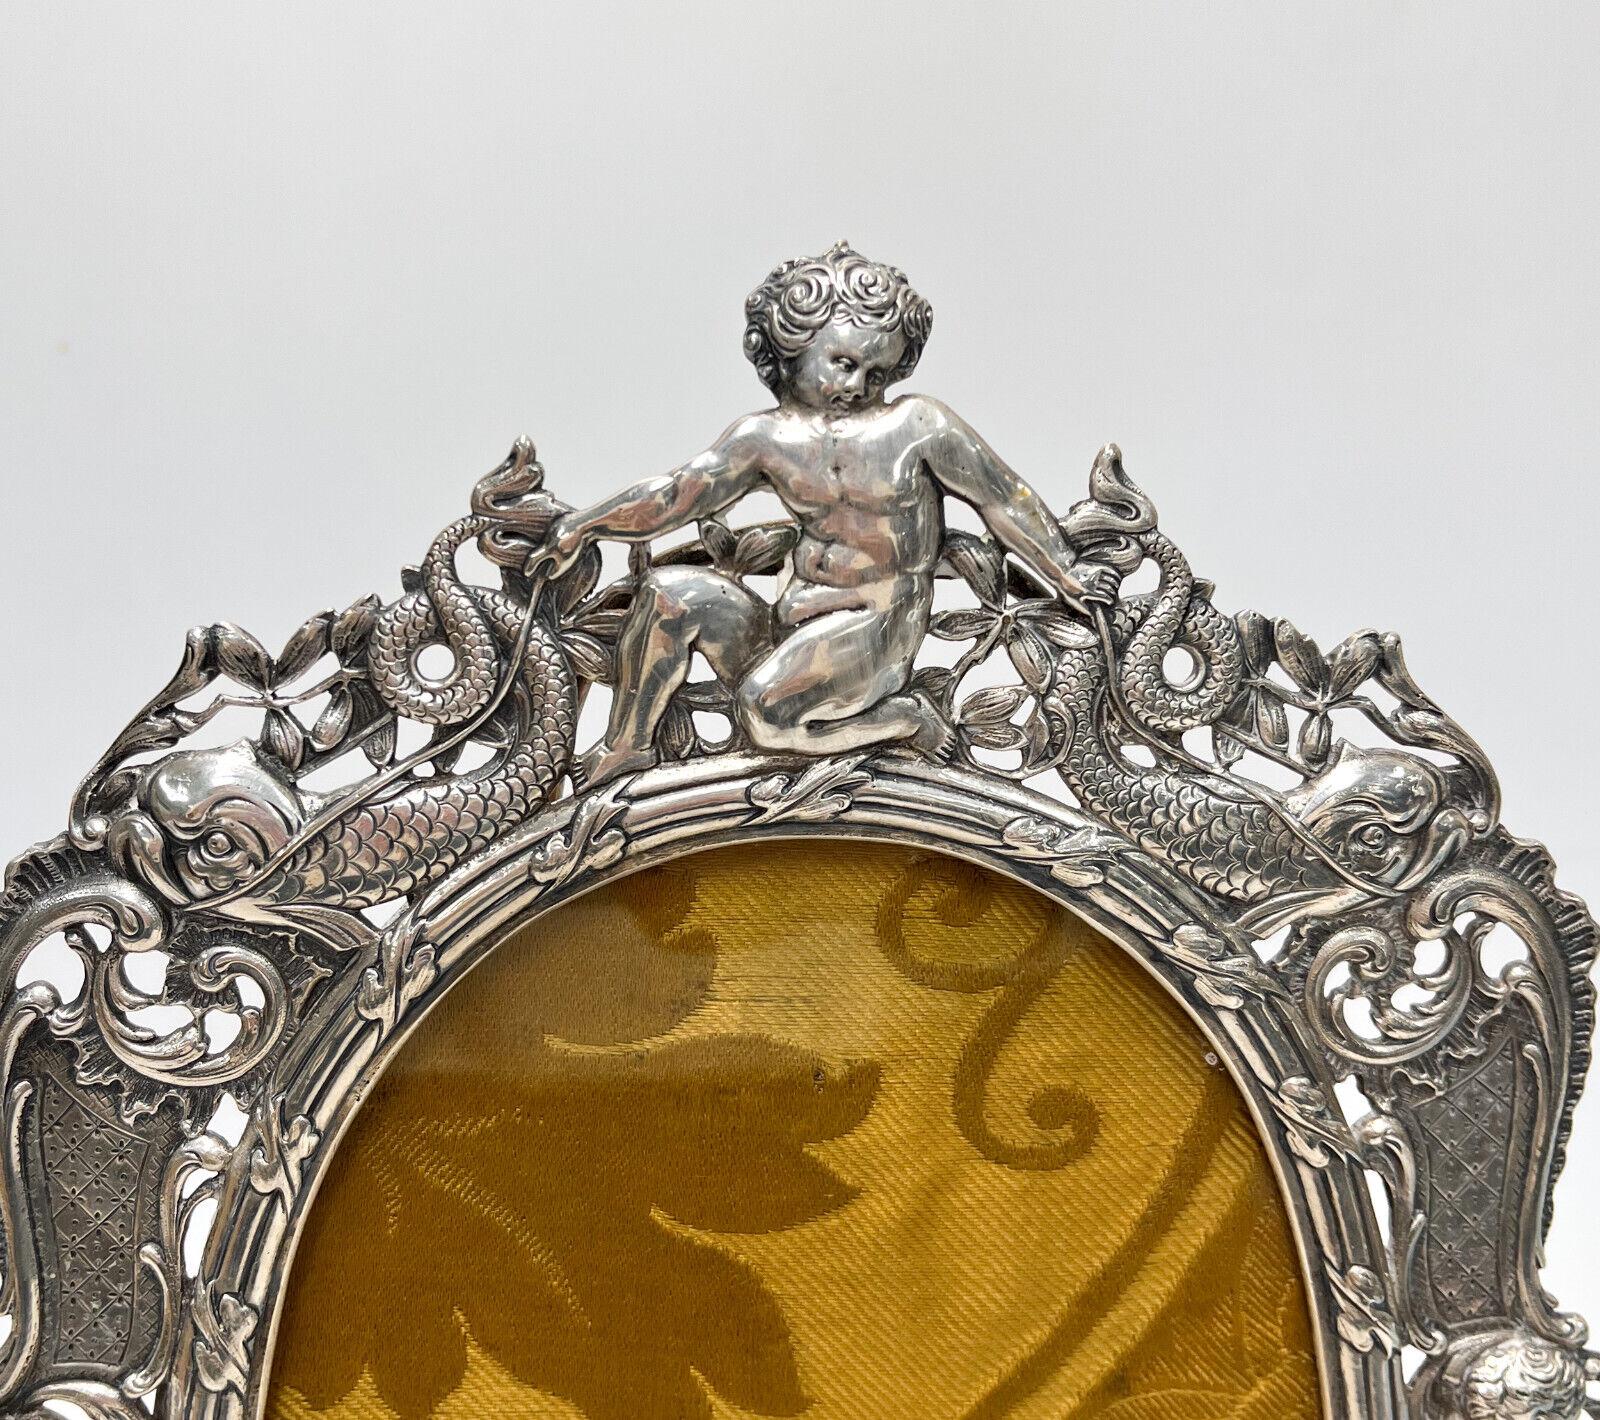 Continental 800 Silber durchbrochener Cherub Fotorahmen, um 1900. Repousse figuralen Putten mit Delphin und foliate swag Dekoration. Unmarkiert, aber zu etwa 80 % aus Silber. Goldfarbene Stoffunterlage. Wahrscheinlich Italienisch.

Zusätzliche